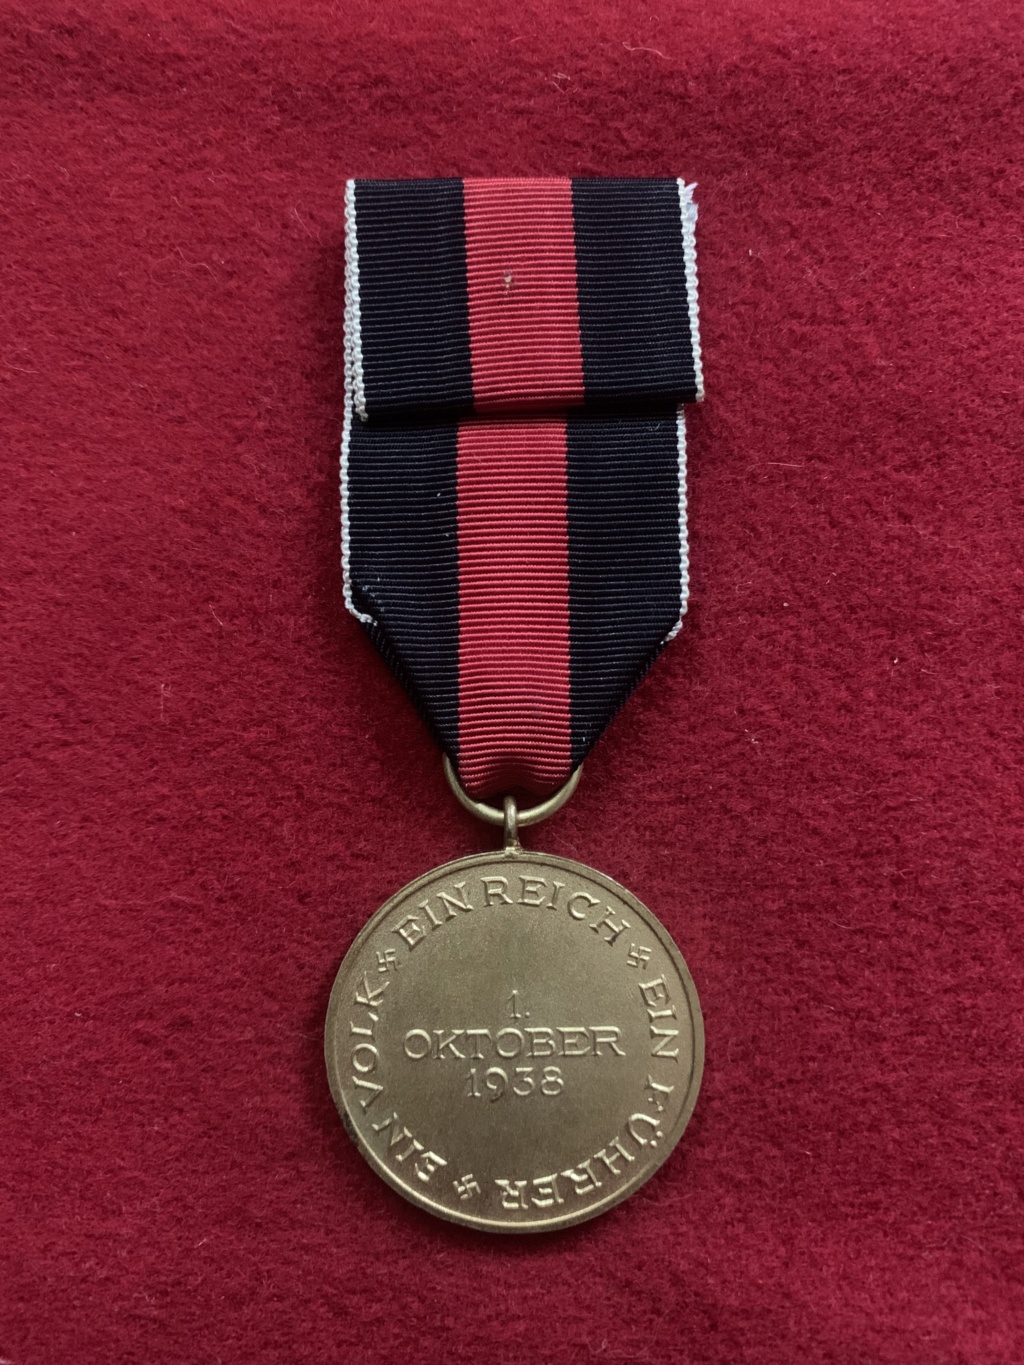 Médaille des Sudetes 1938 D33f6610